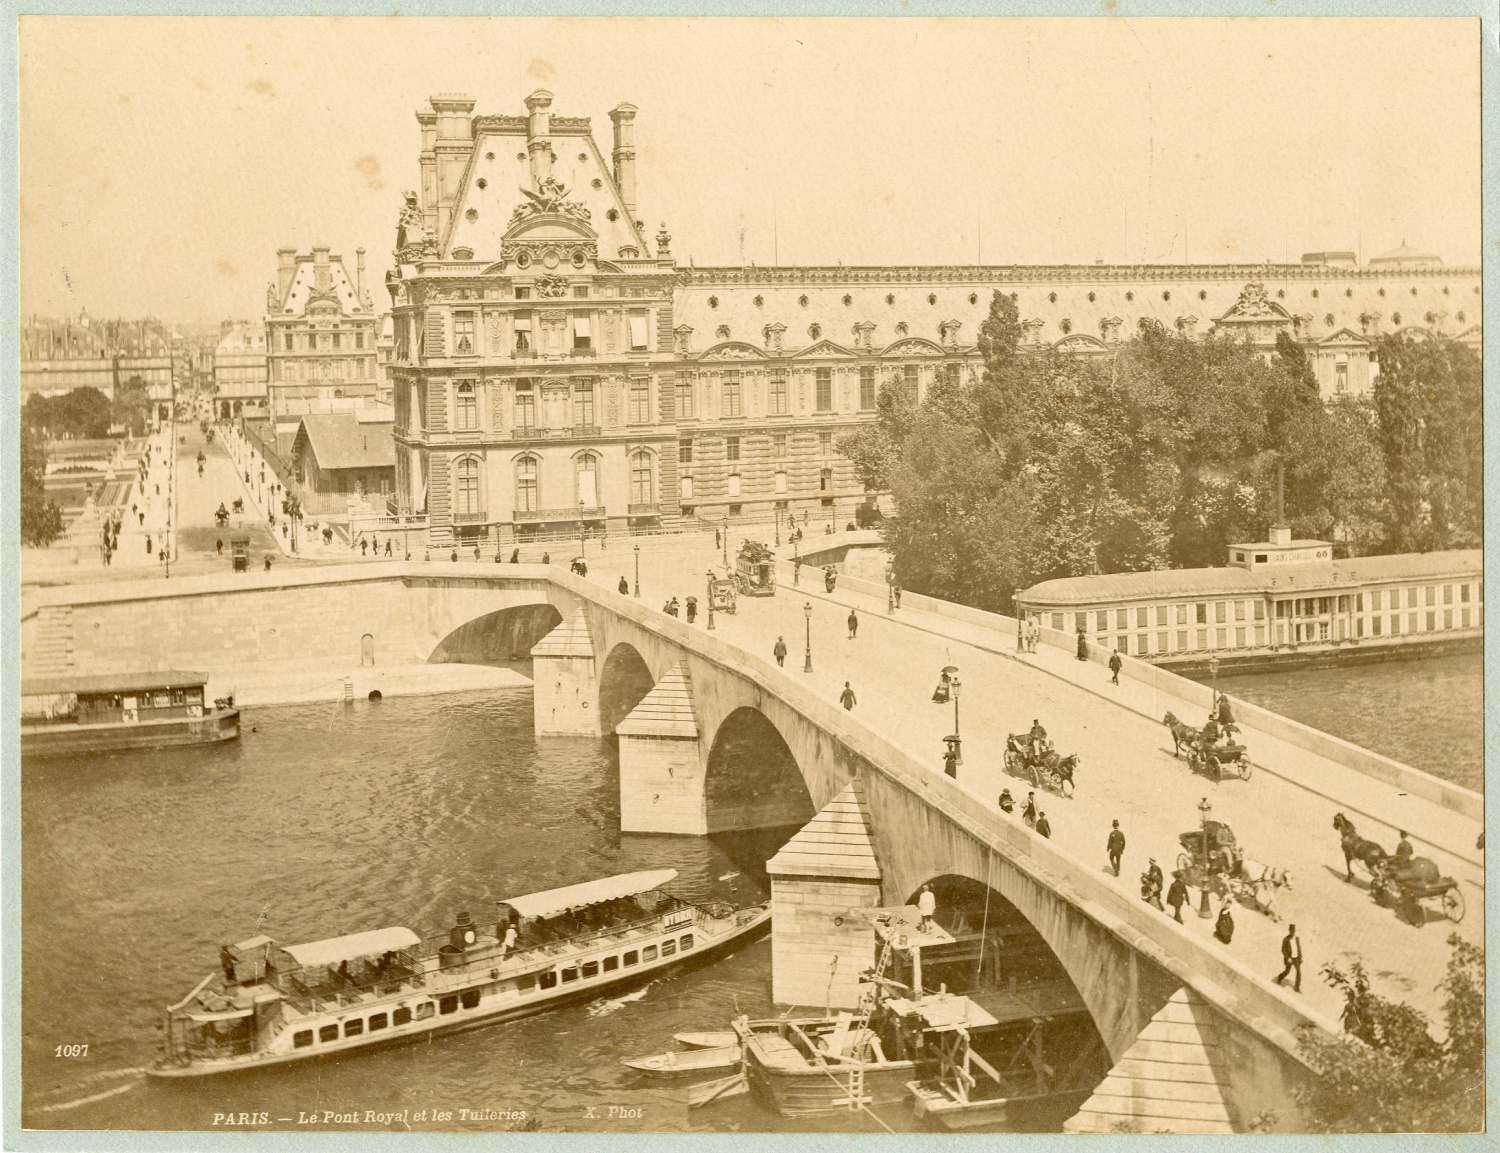 X. Phot. France, Paris, le pont royal et les Tuileries by Photographie ...